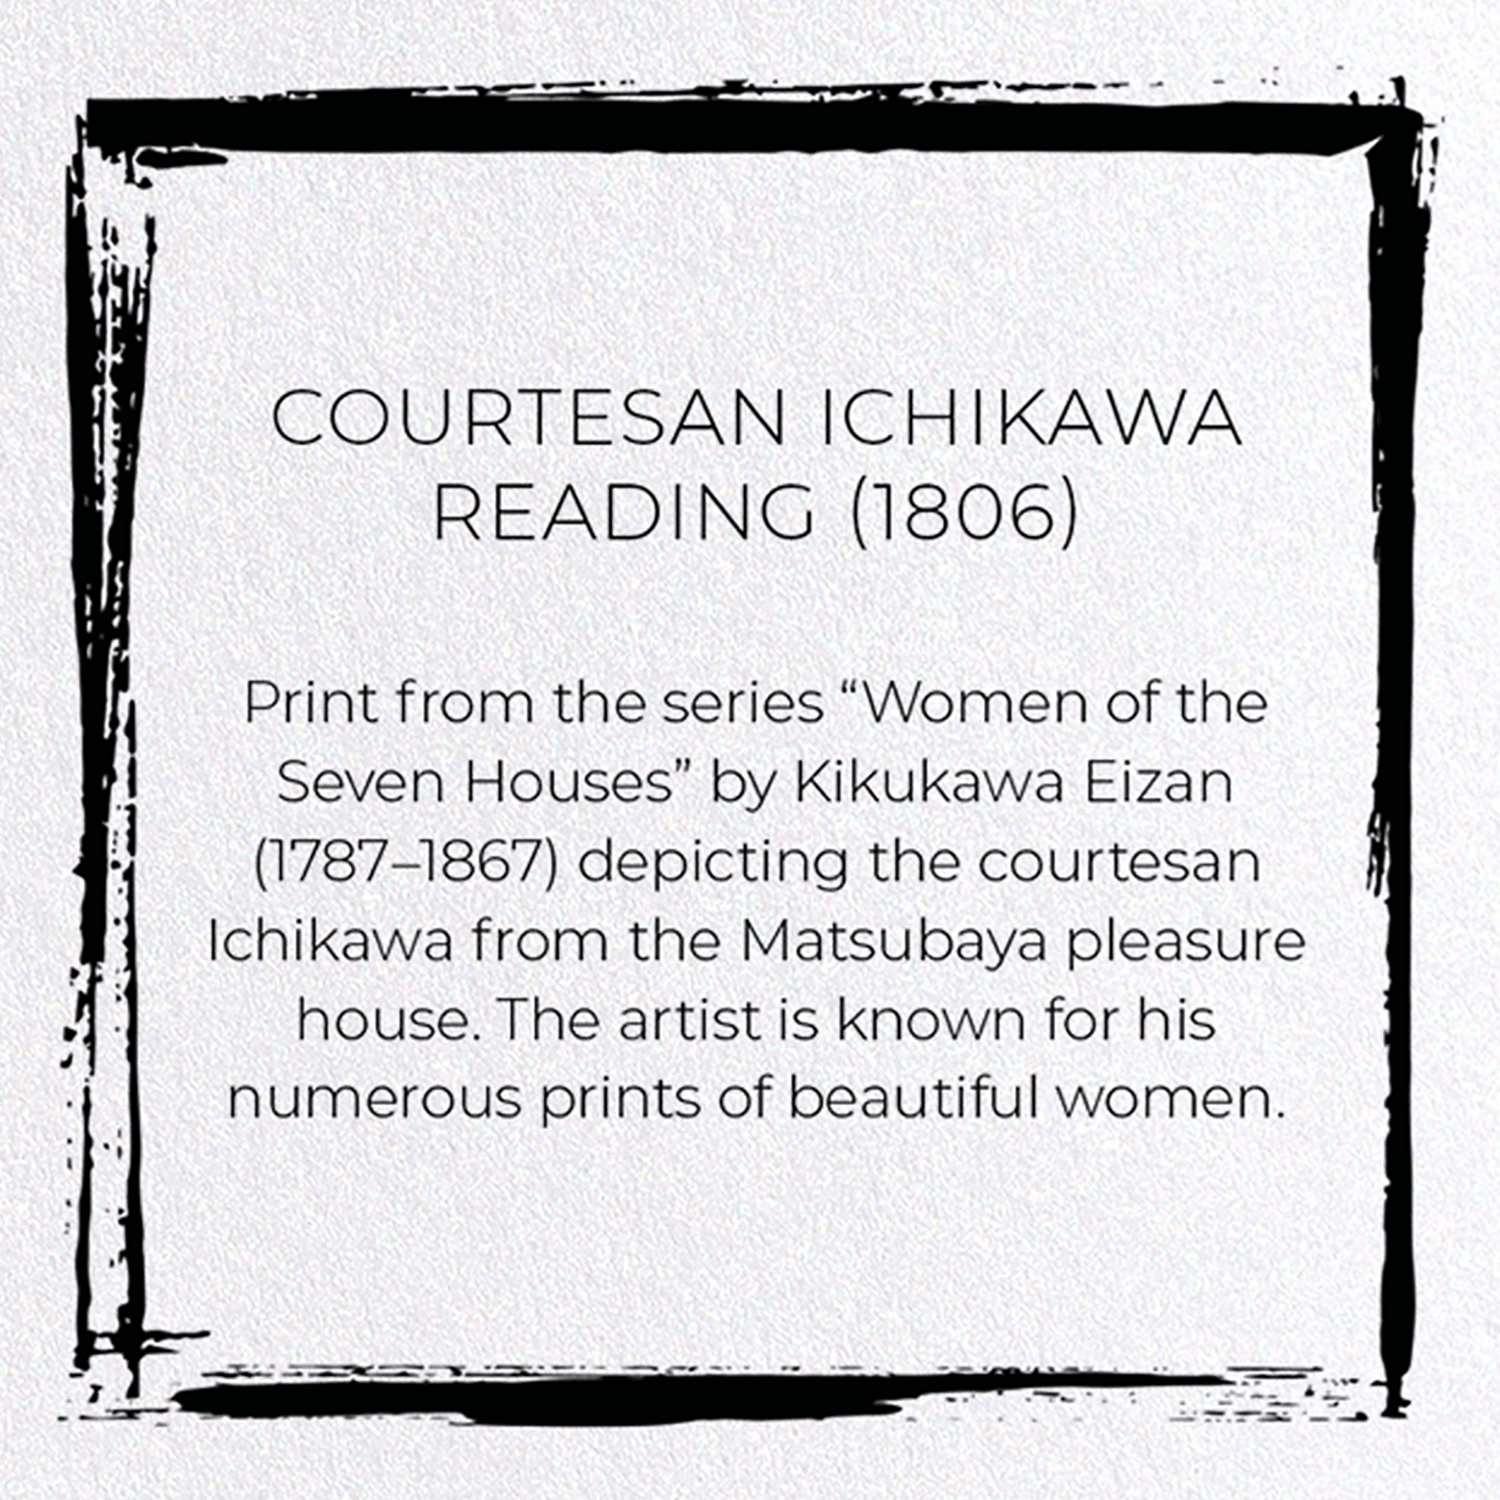 COURTESAN ICHIKAWA READING (1806)